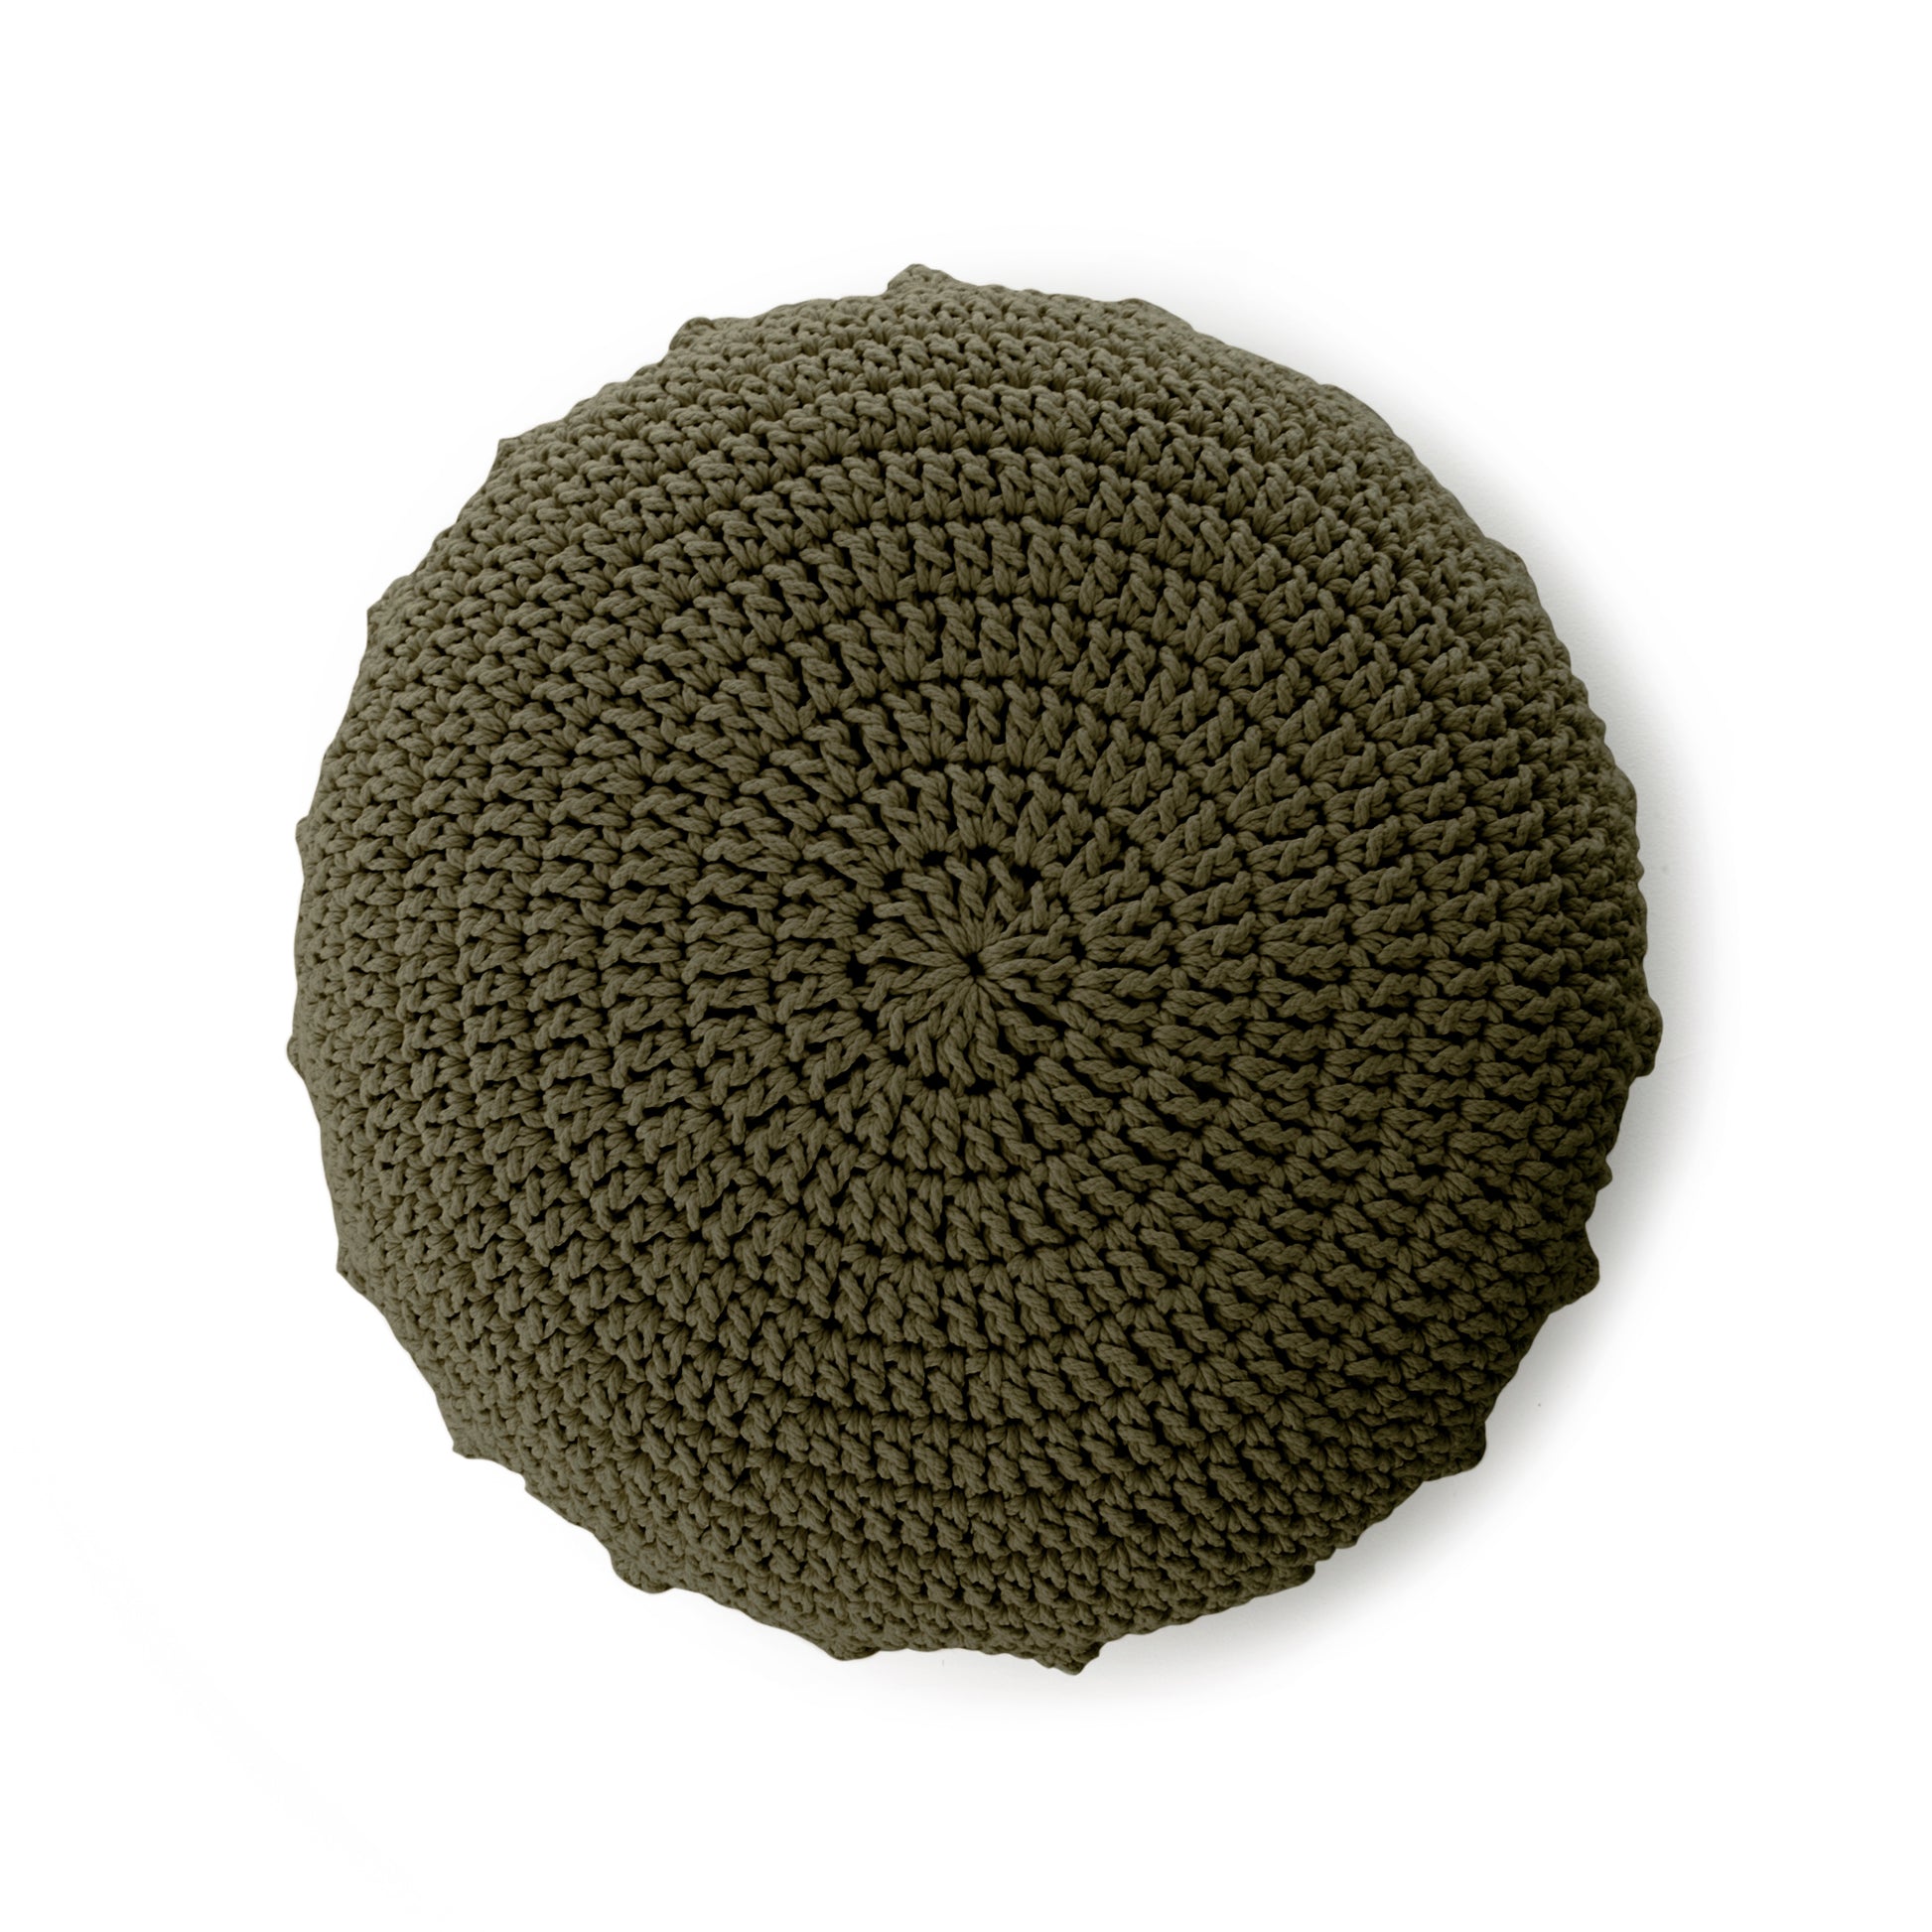 Puff Disco em crochê Verde, com fio 100% algodão.  Fechamento com zíper, possibilitando a remoção da capa para lavagem.  Dimensões: Altura - 20cm; Diâmetro - 85cm. 